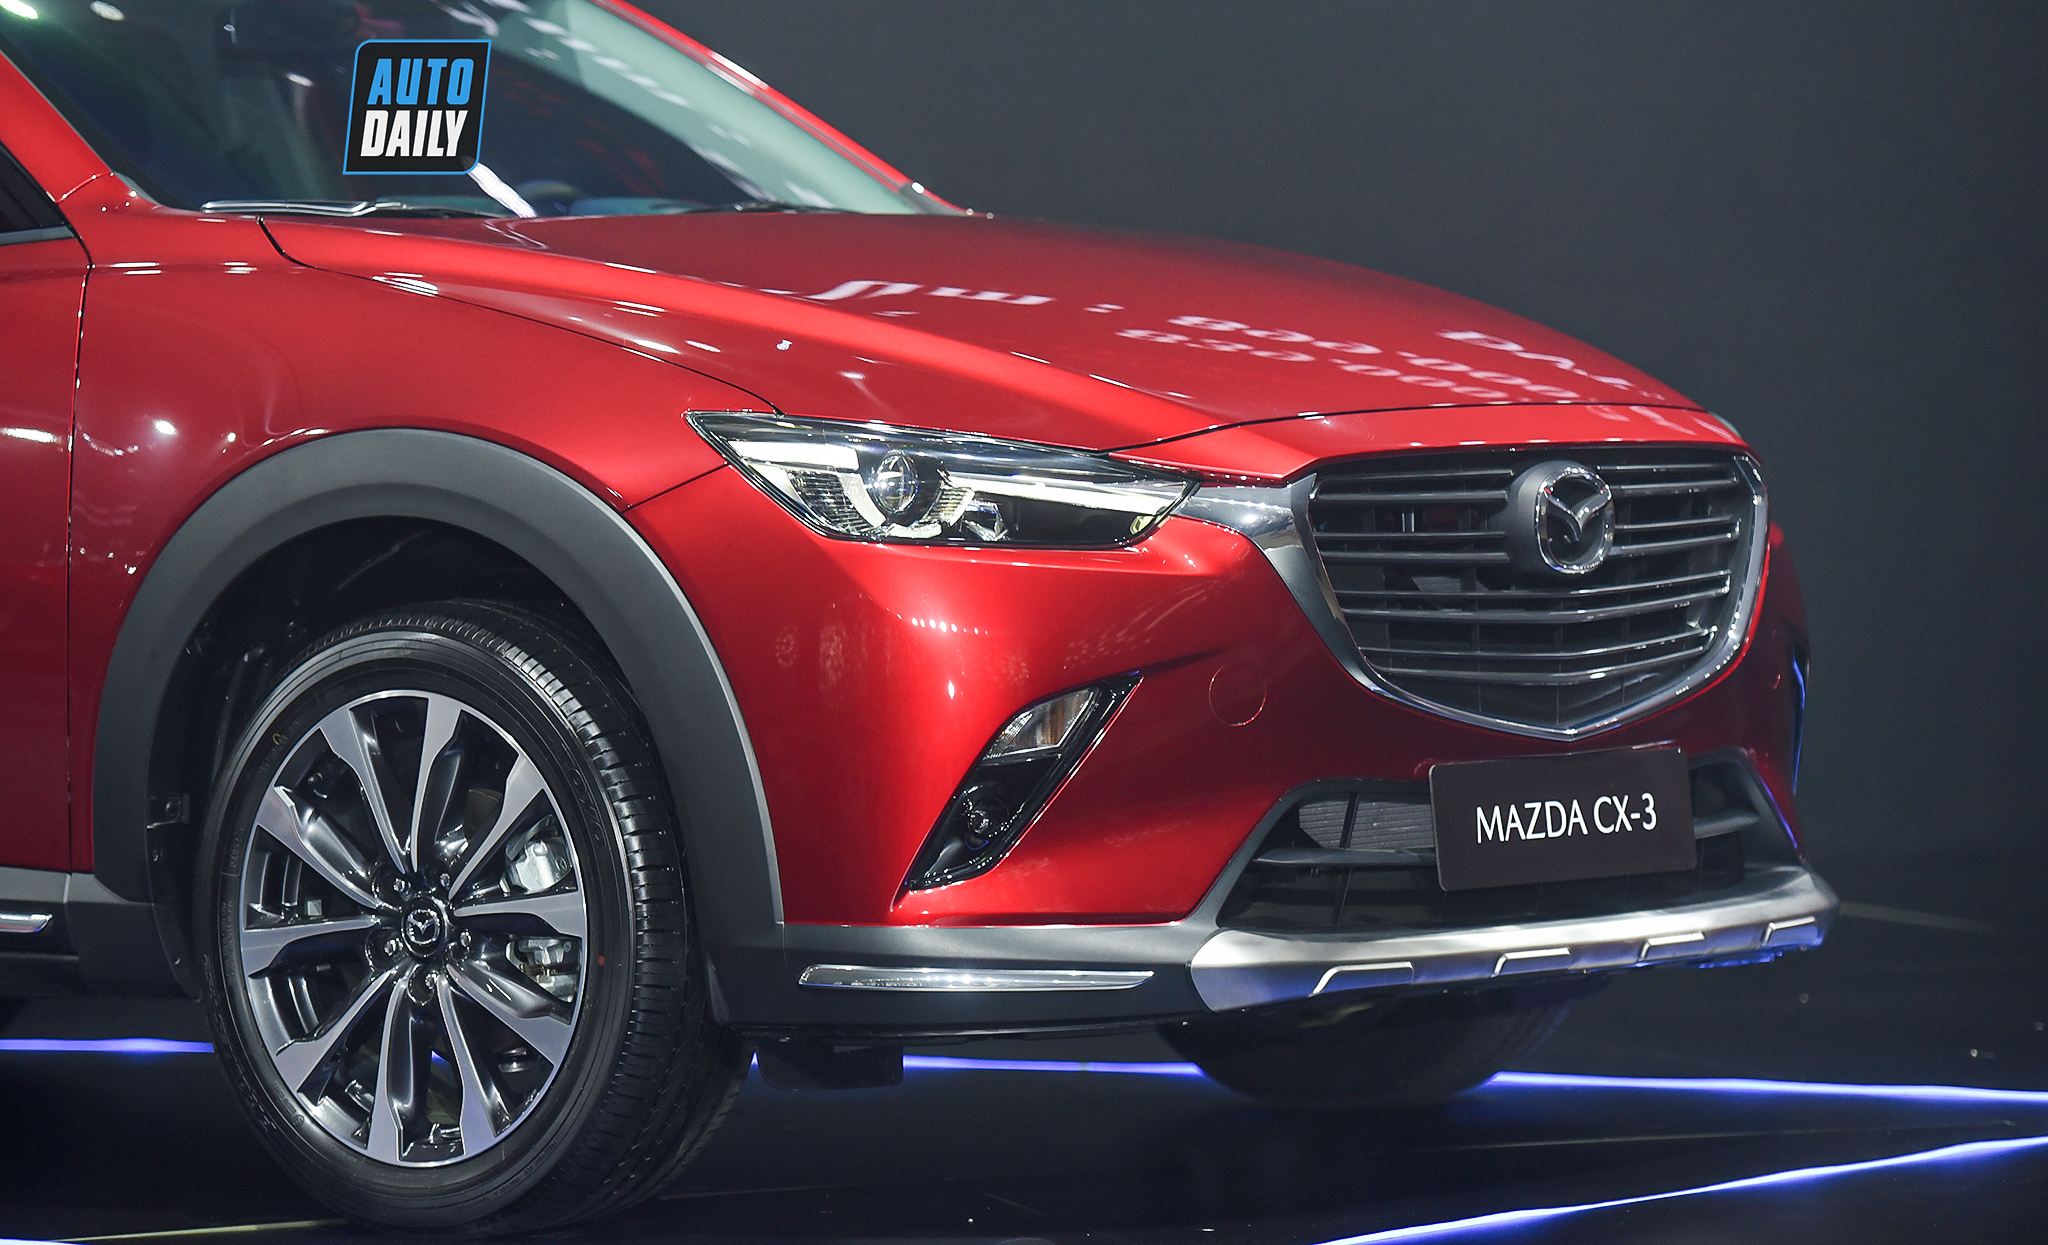 Chi tiết giá lăn bánh của Mazda CX-3 2021 Mazda CX-3 2021 ra mắt tại Việt Nam giá từ 629 triệu mazda-cx33.jpg